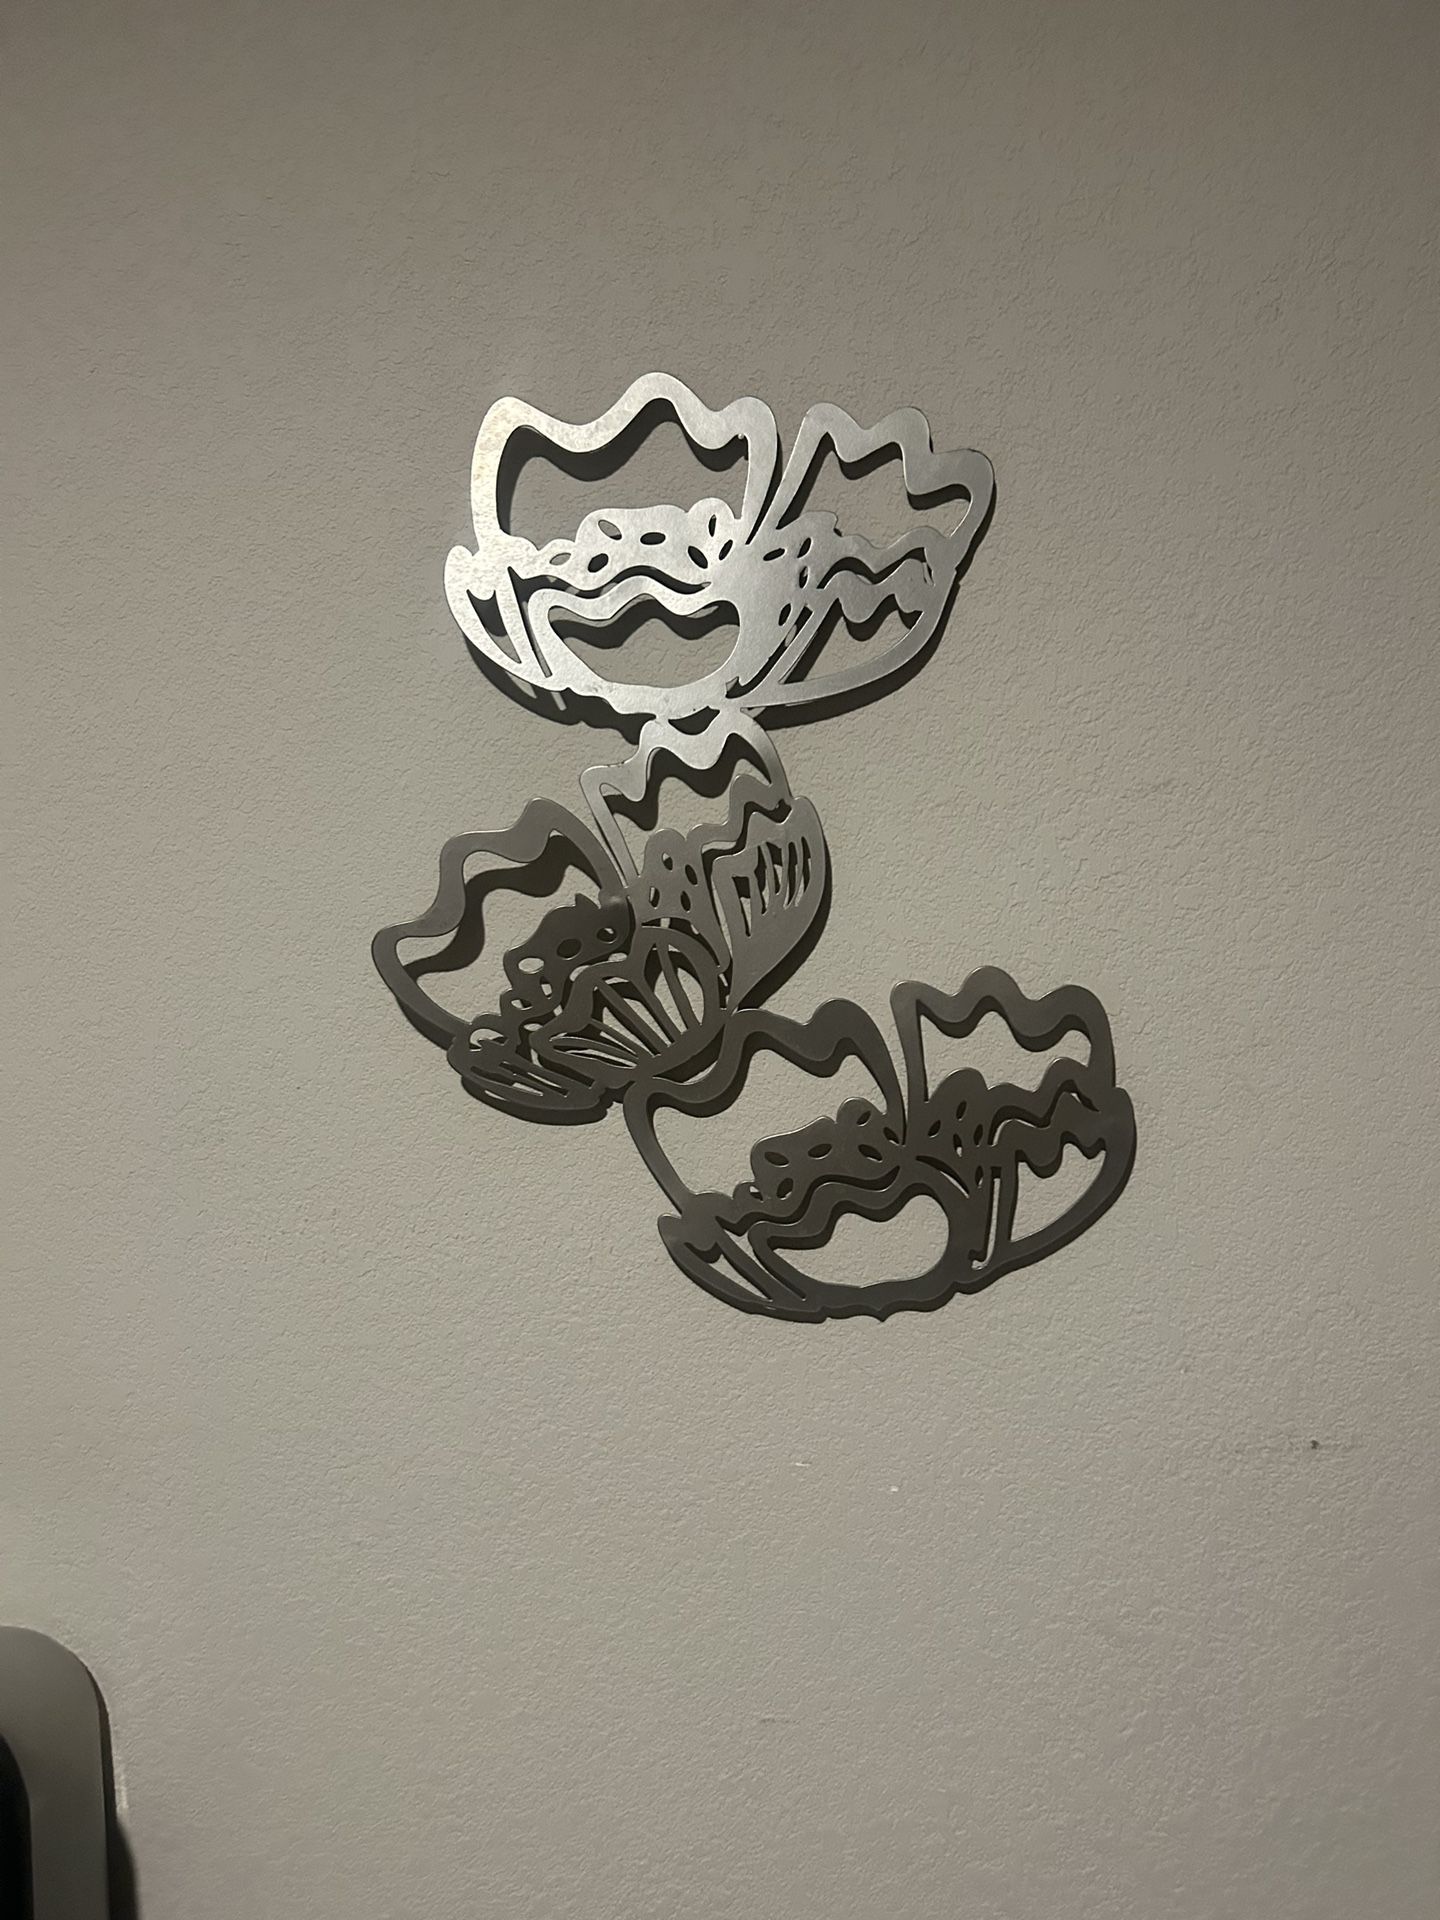 IKEA Metal Wall Art Home Decor Silver Butterfly Flower